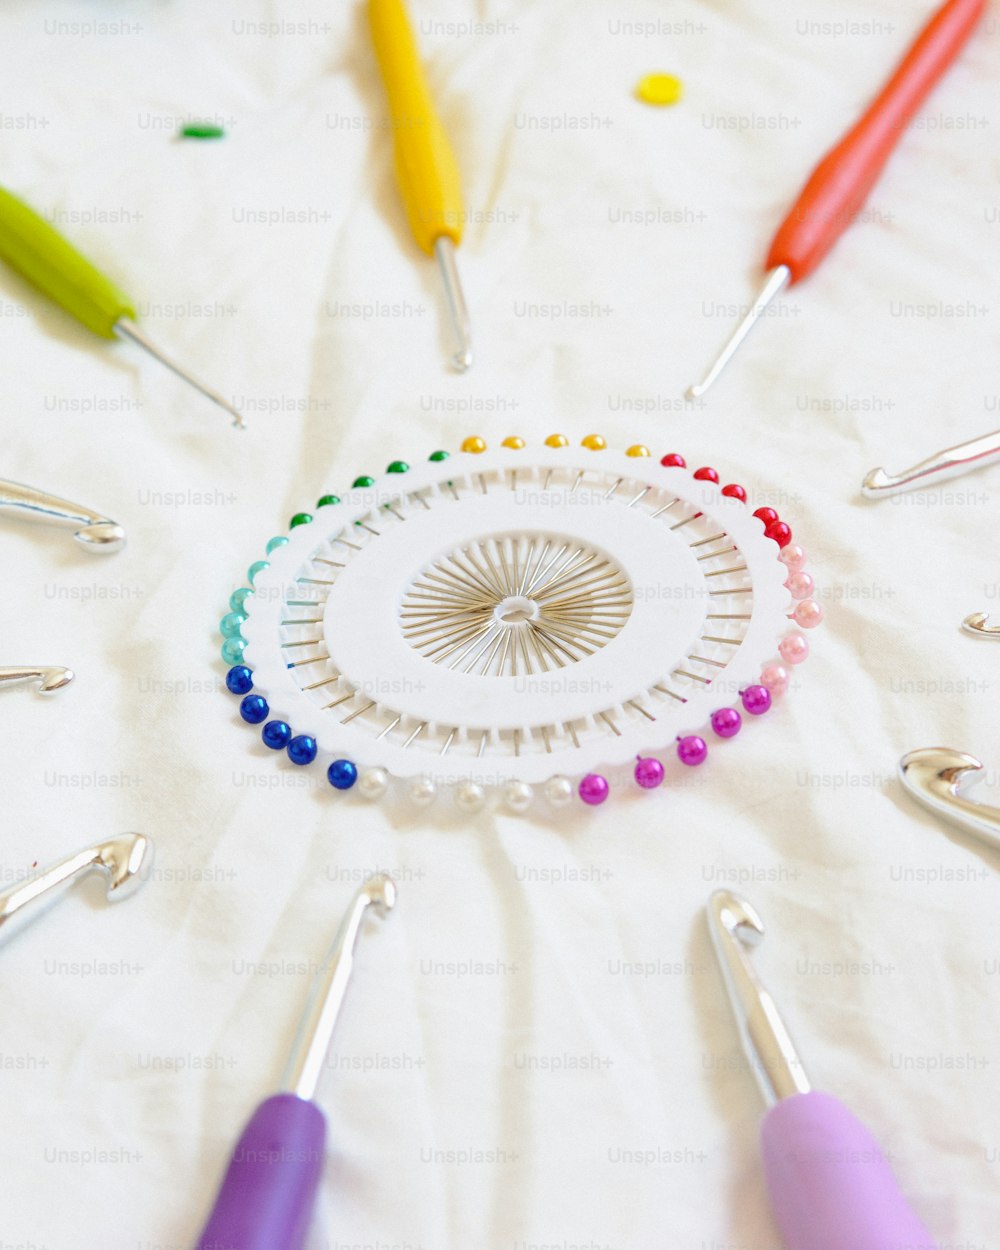 um grupo de ganchos de crochê e agulhas dispostos em círculo